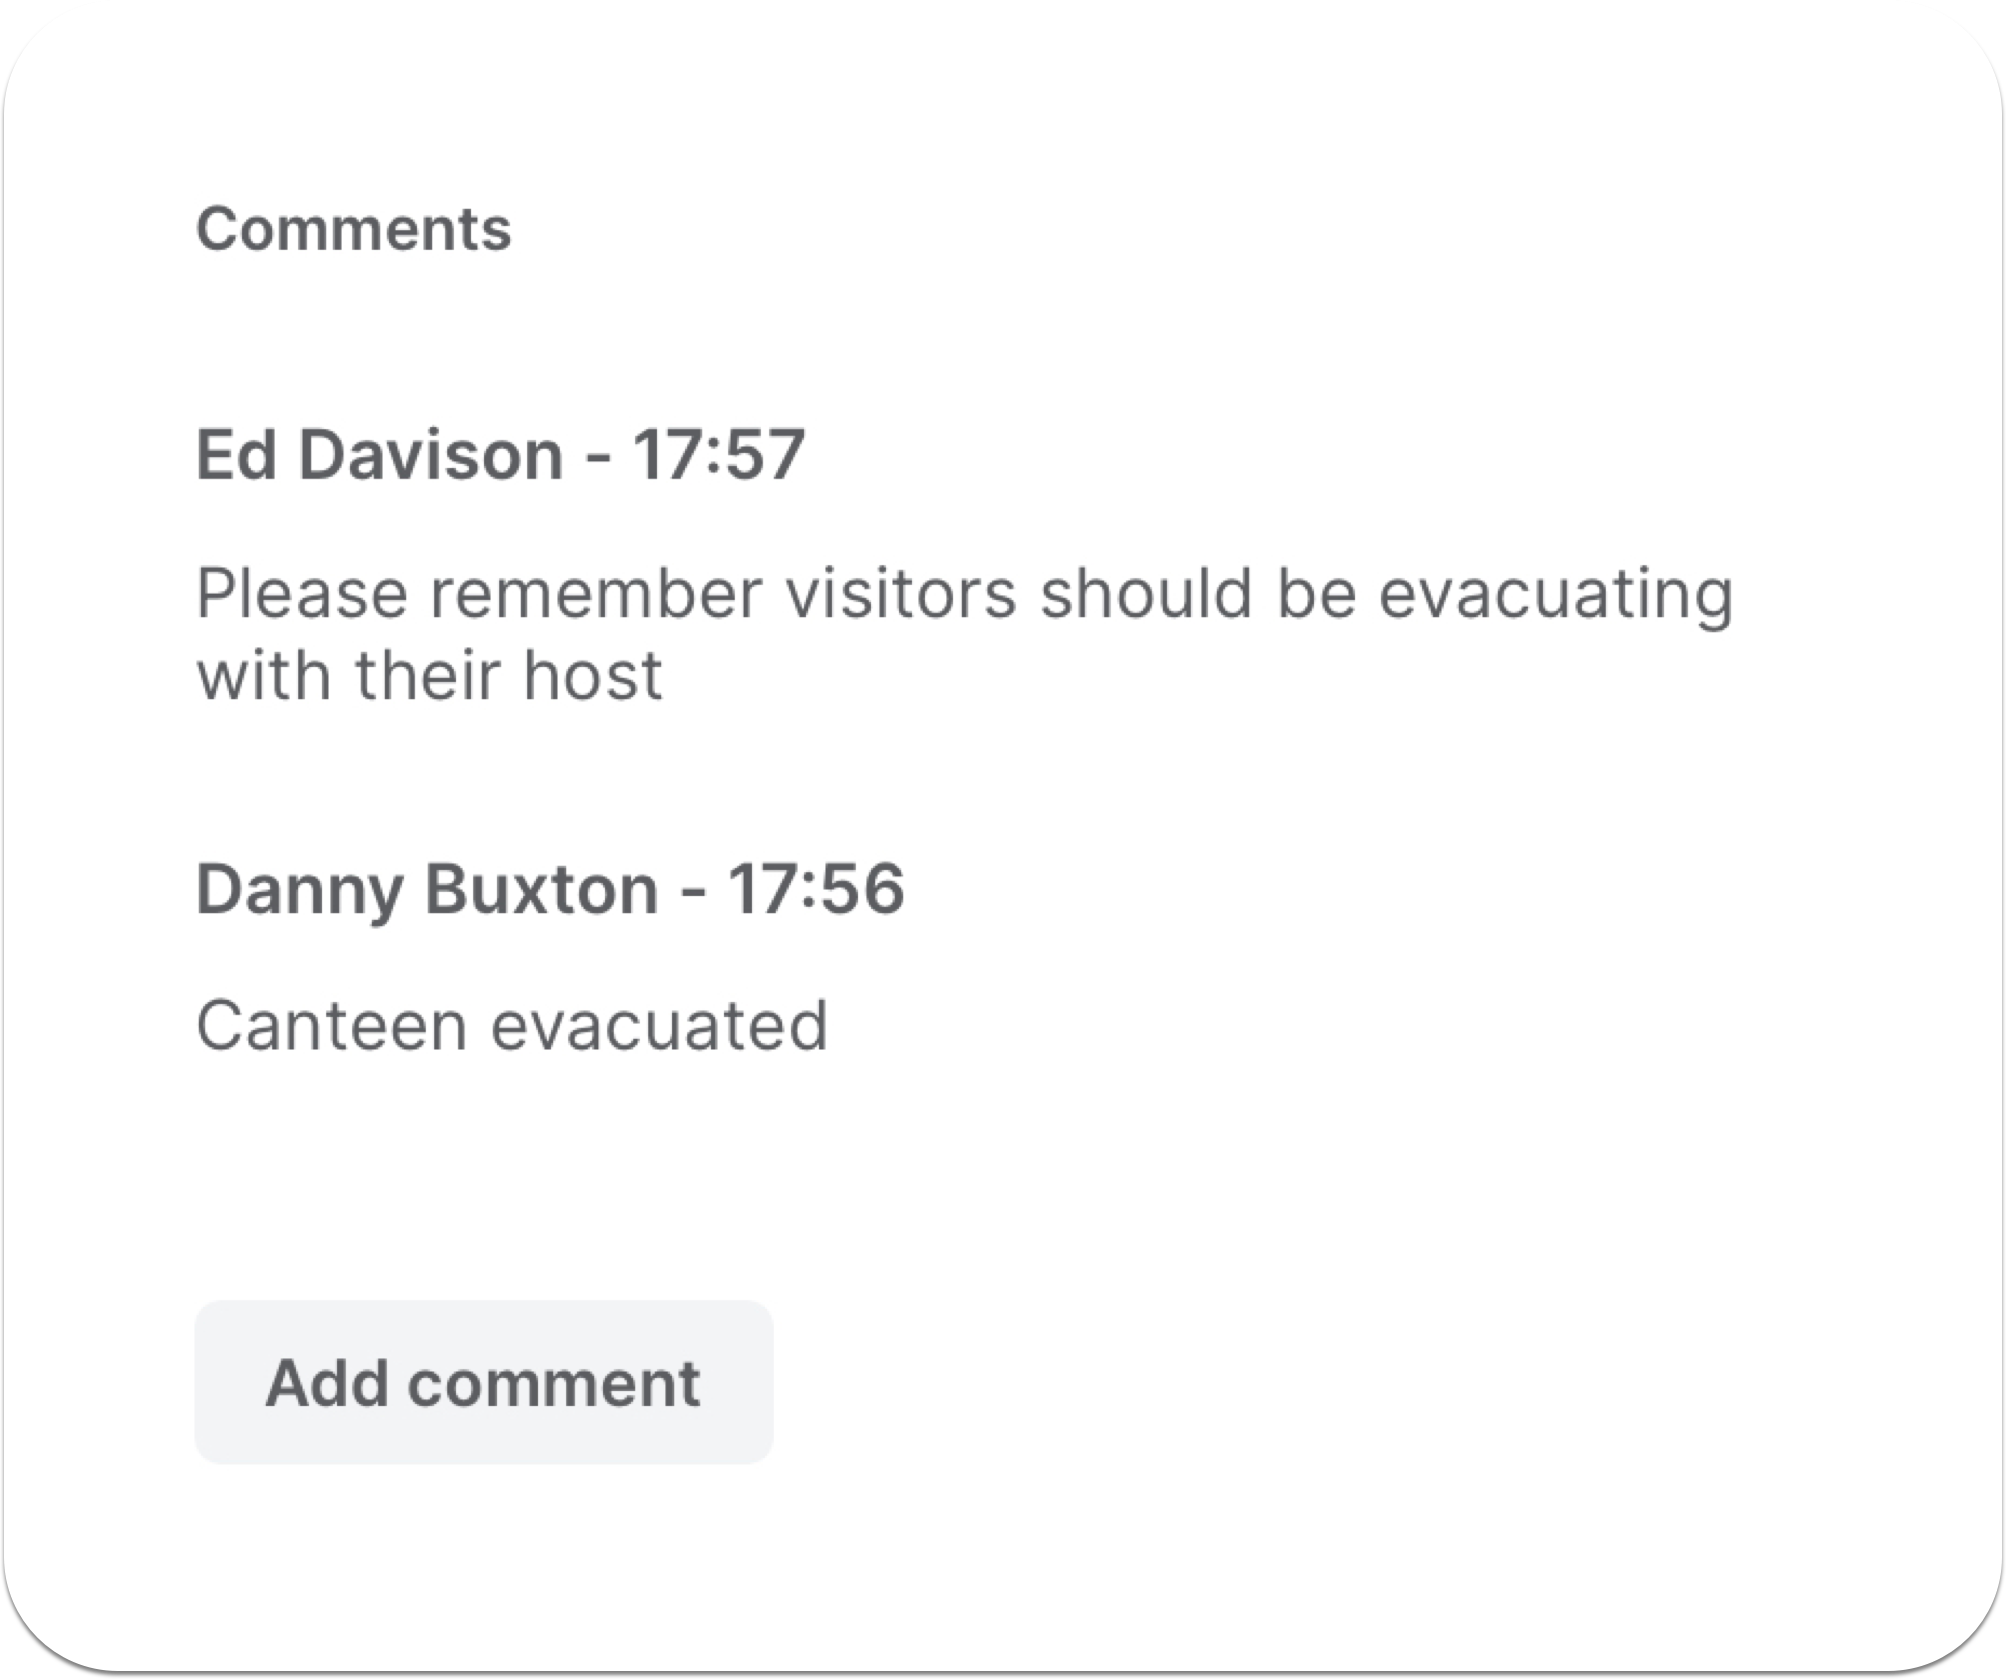 Se añaden comentarios al informe de evacuación compartido en tiempo real